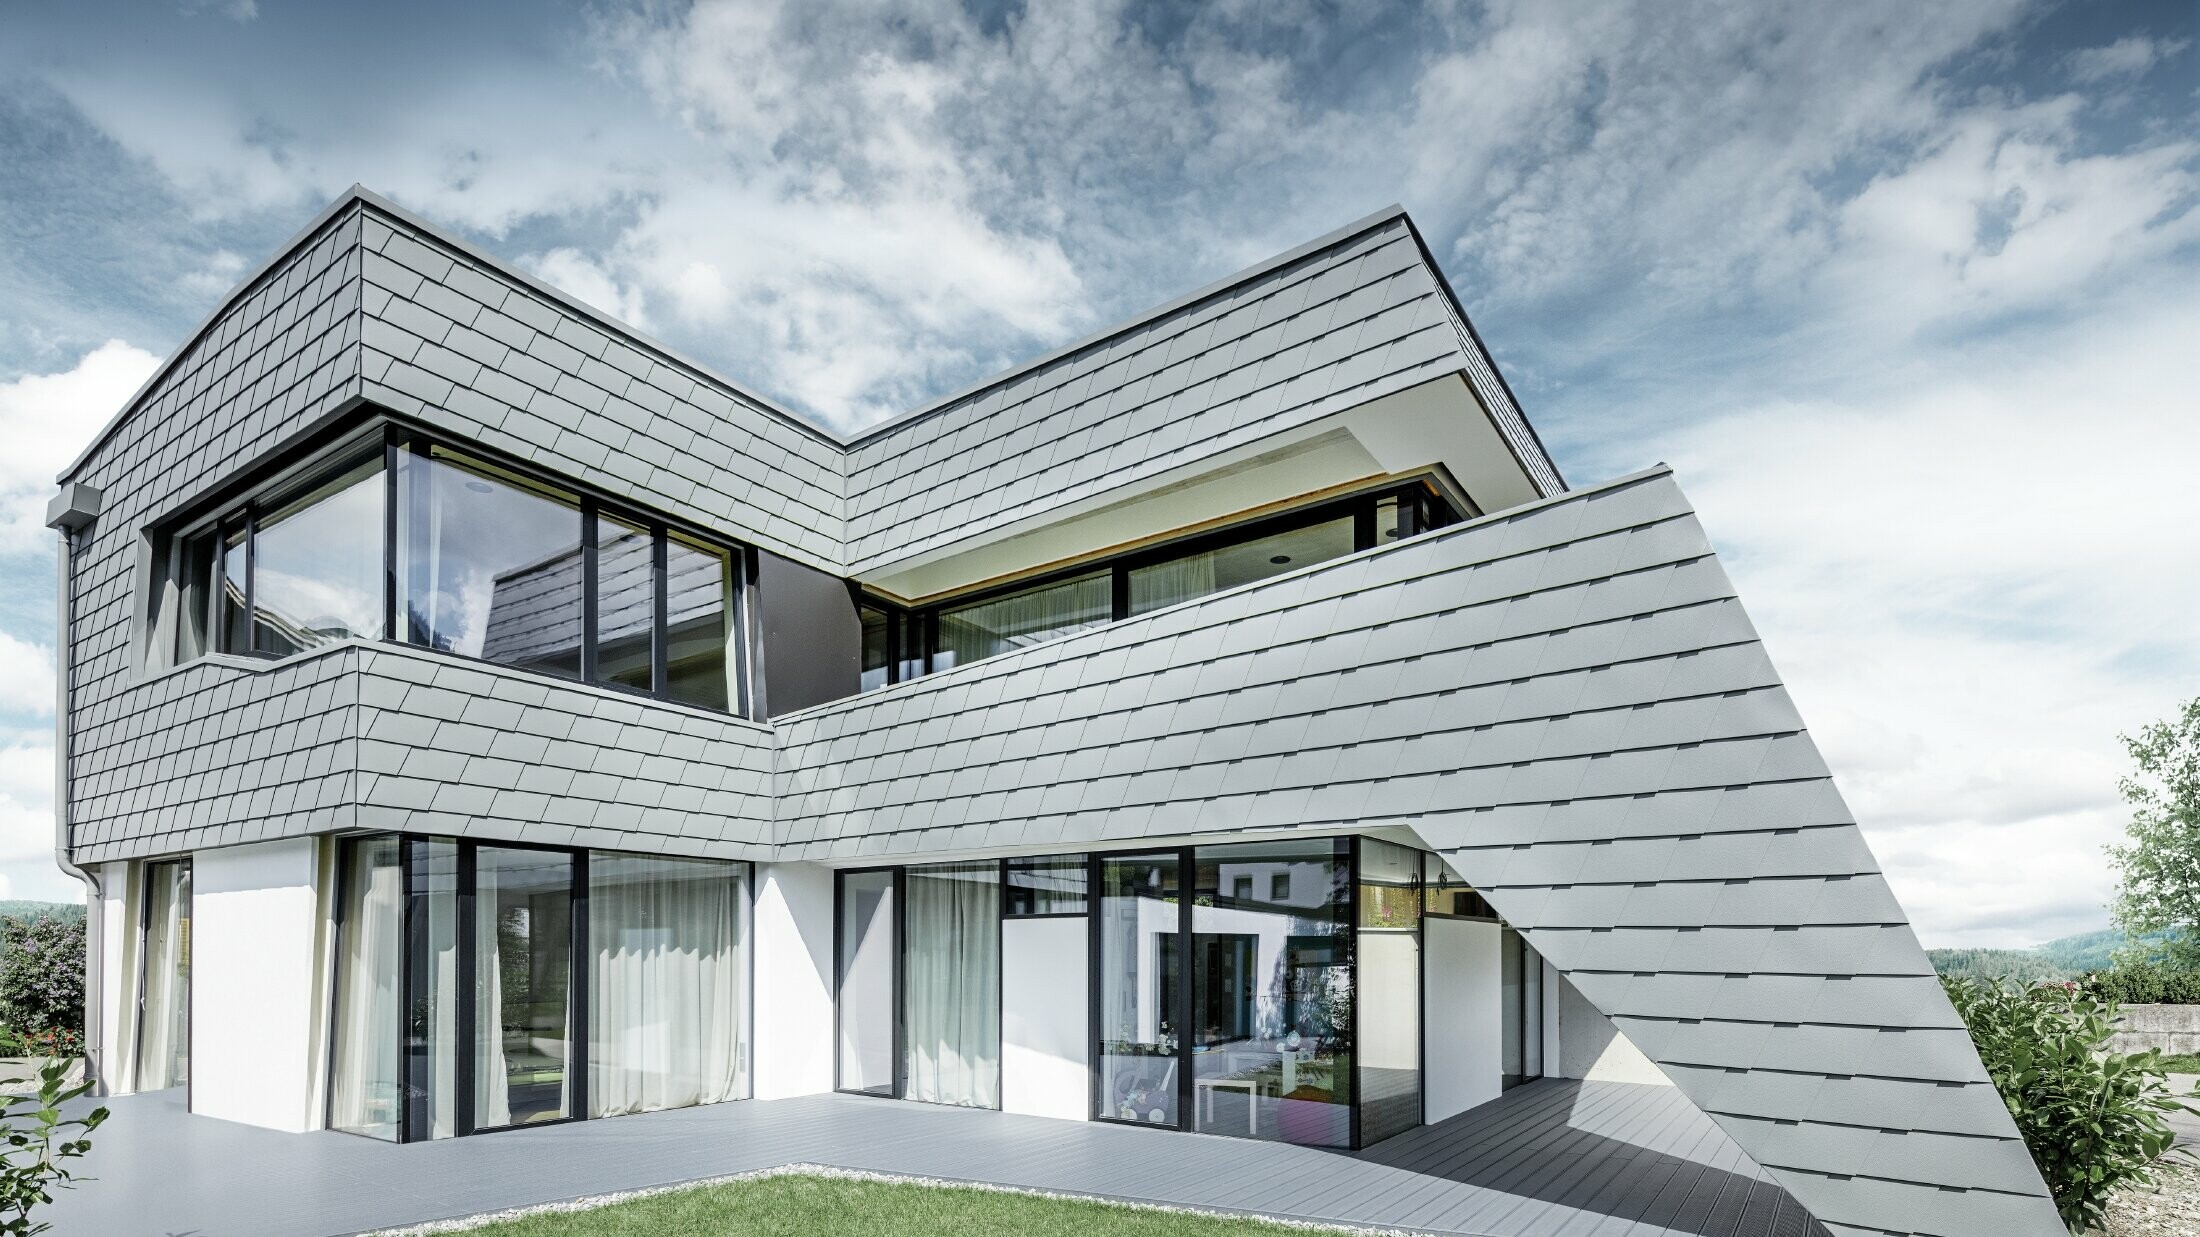 Modernt enfamiljshus med plantak, stora fönsterytor och en ljusgrå shingelfasad av aluminium från PREFA